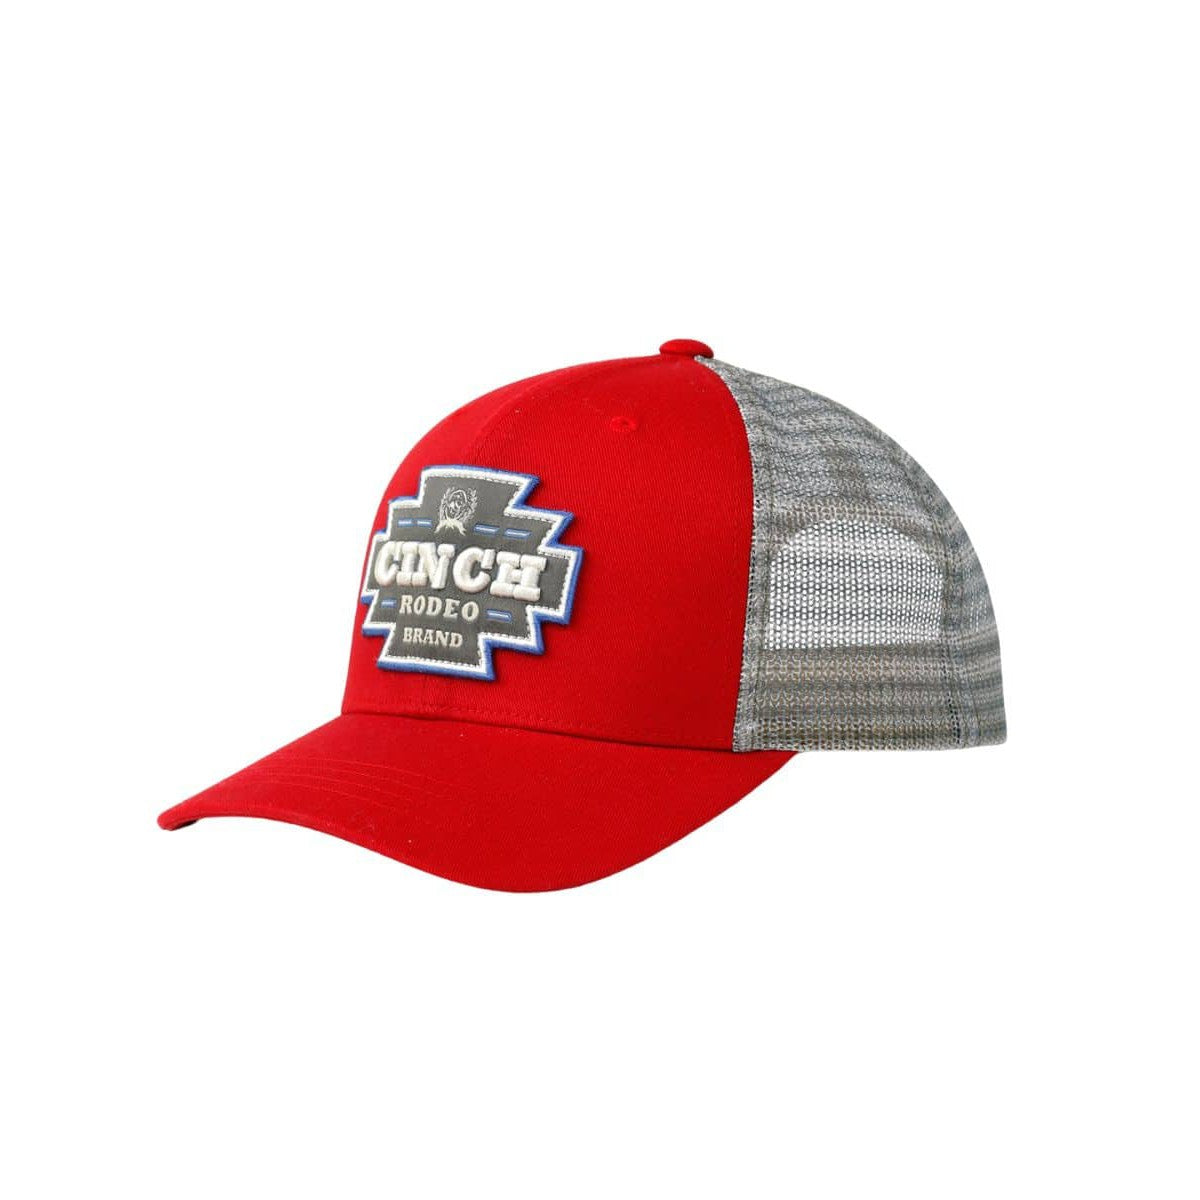 Cinch Women's Trucker Cap - Red